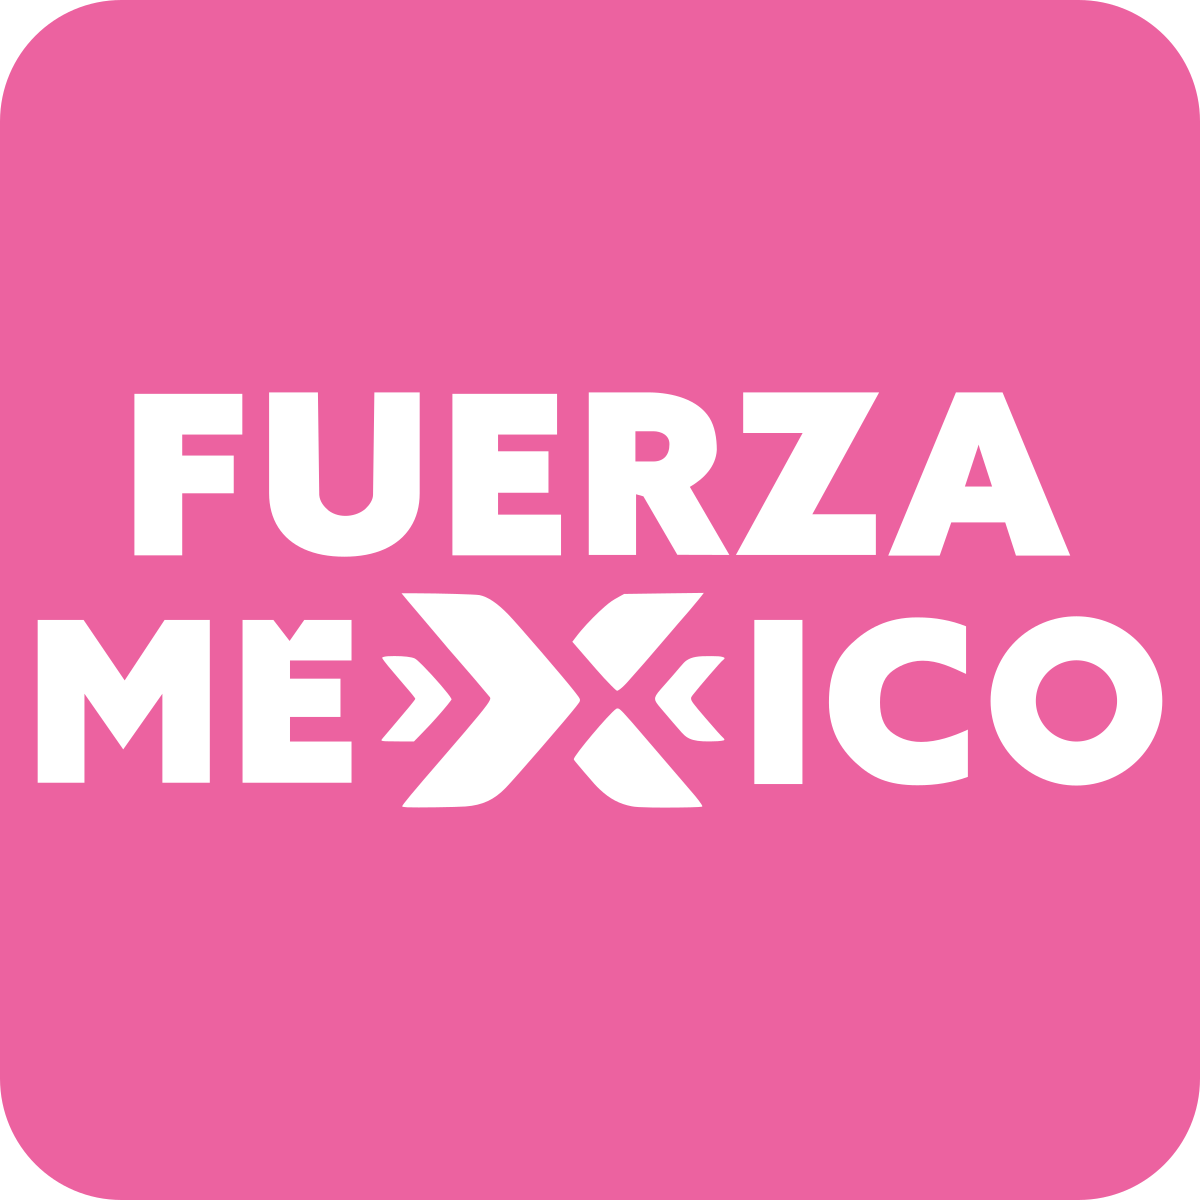 Fuerza por México - Wikipedia, la enciclopedia libre